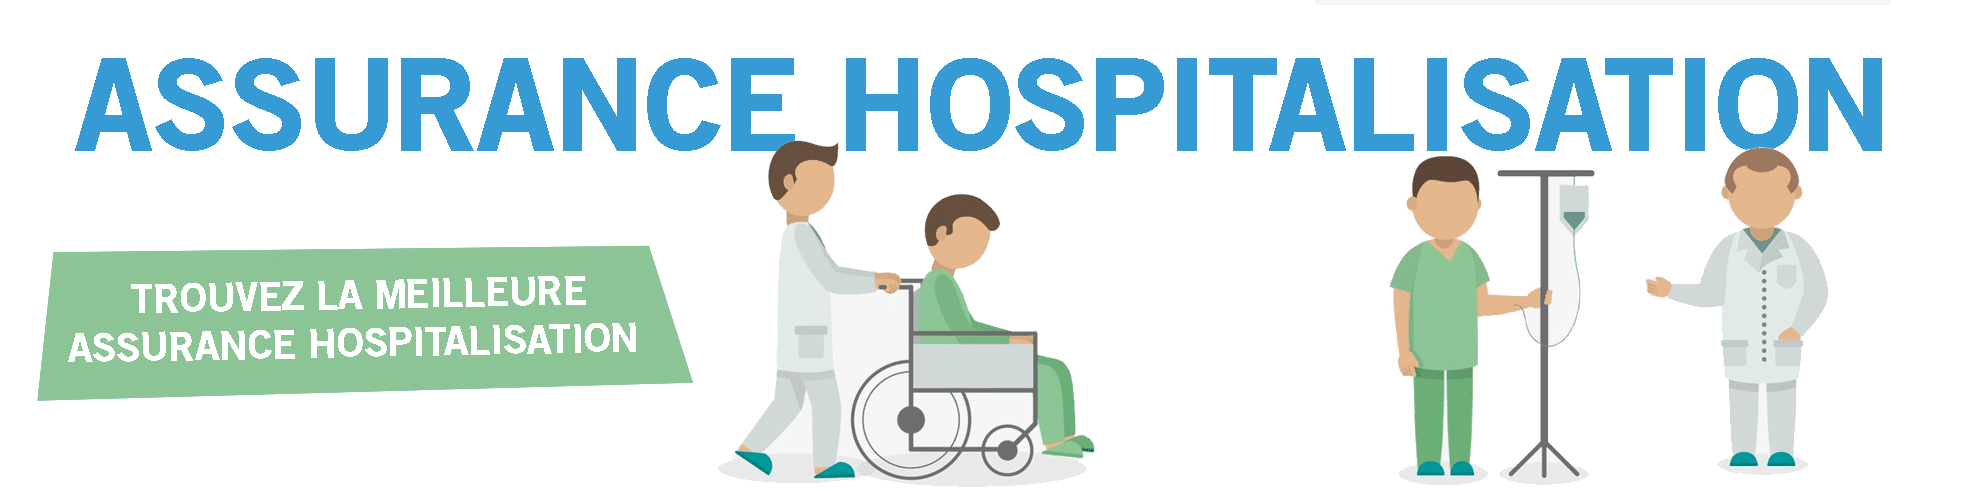 assurance hospitalisation en belgique